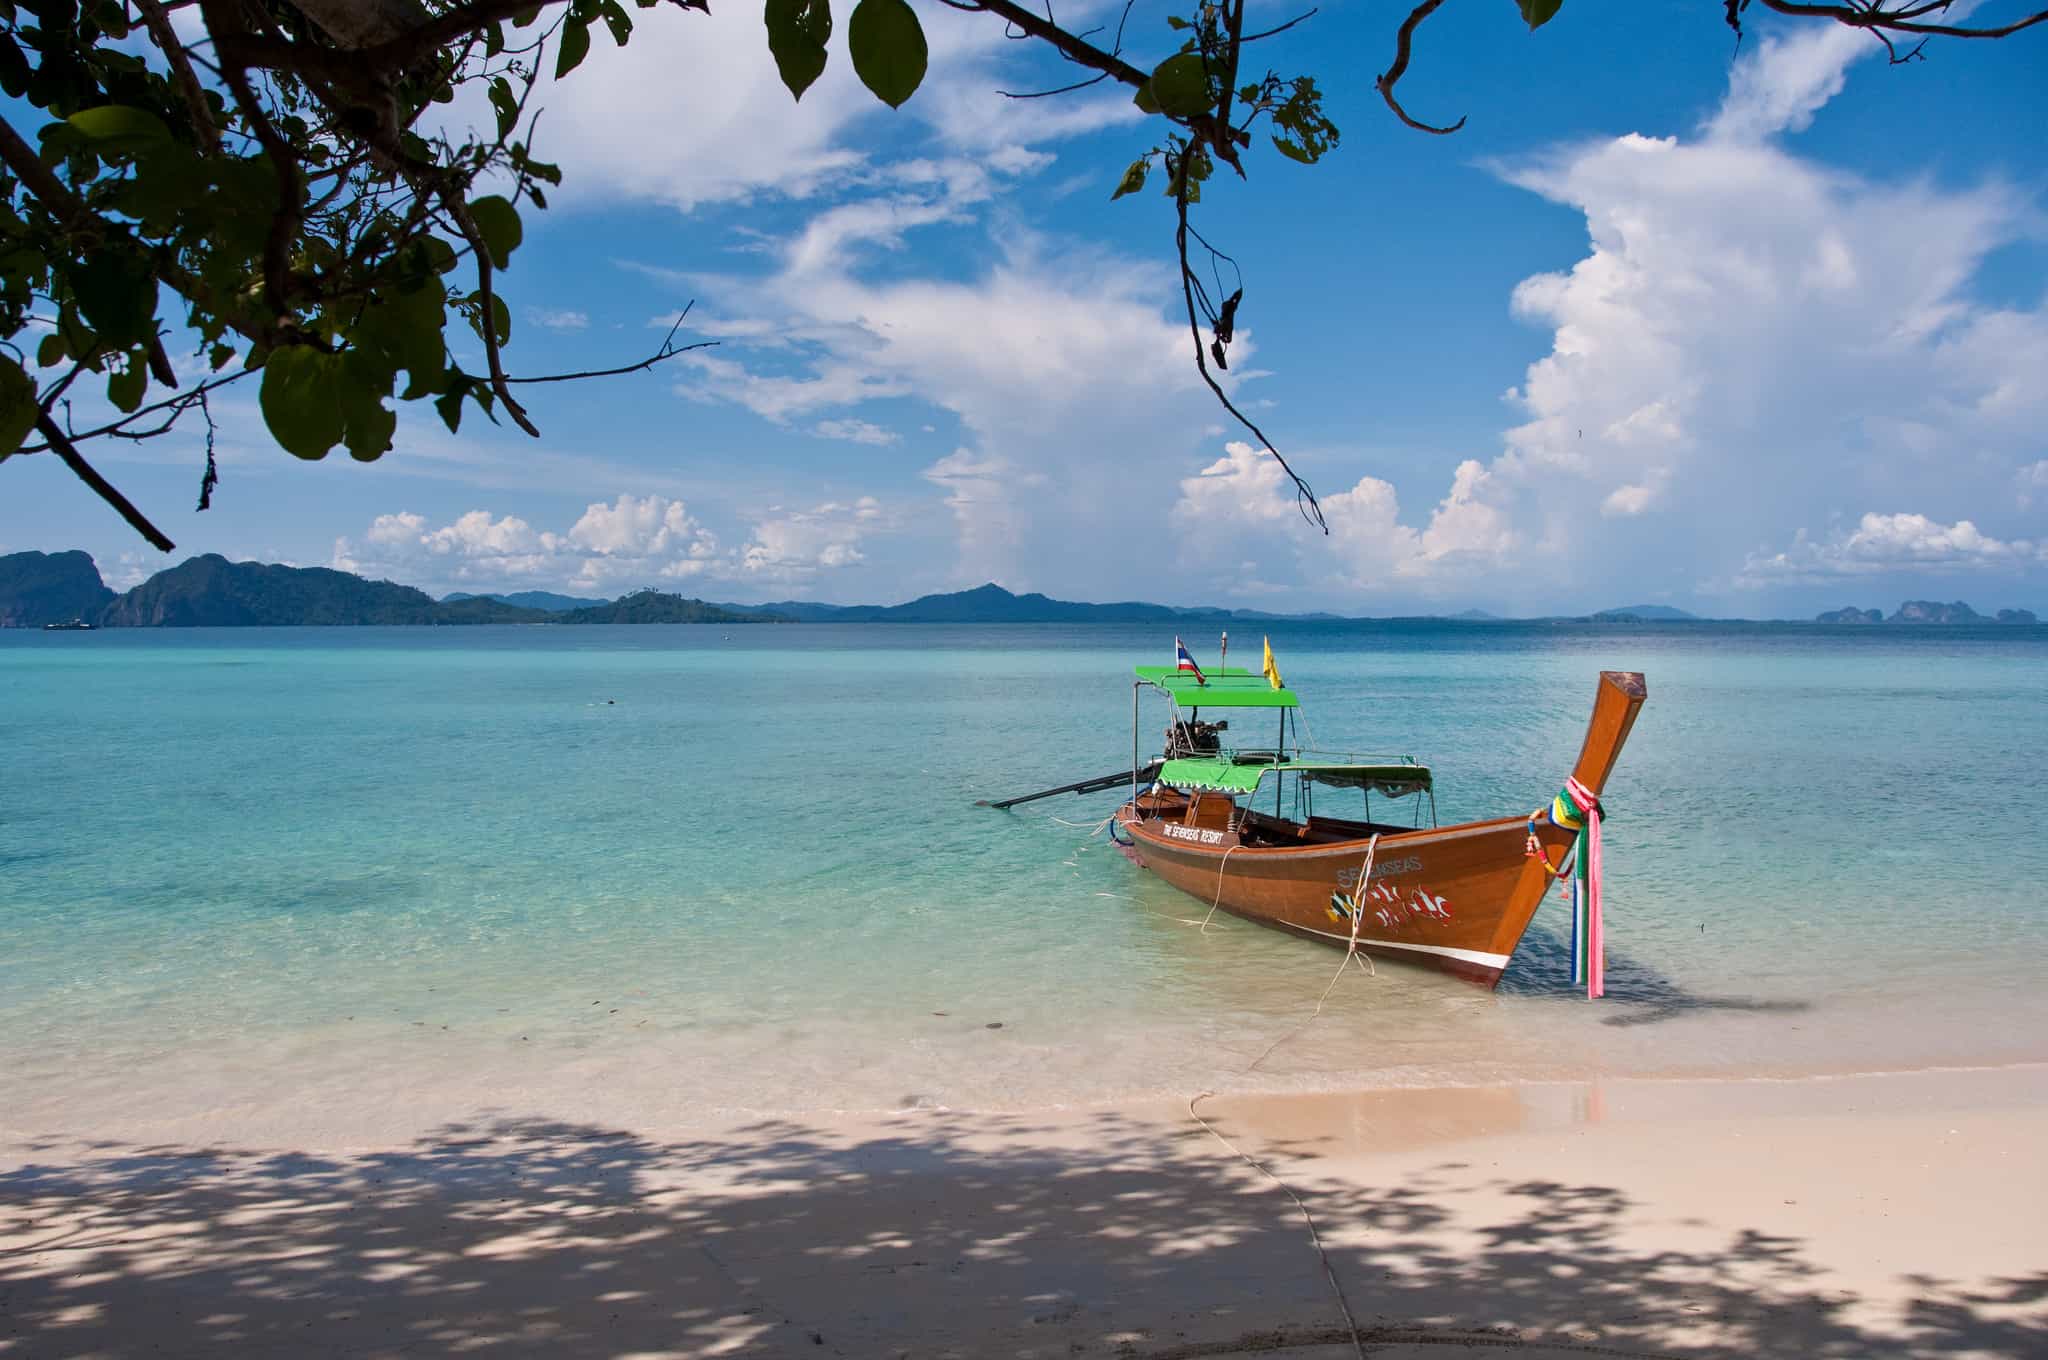 Thailand beaches